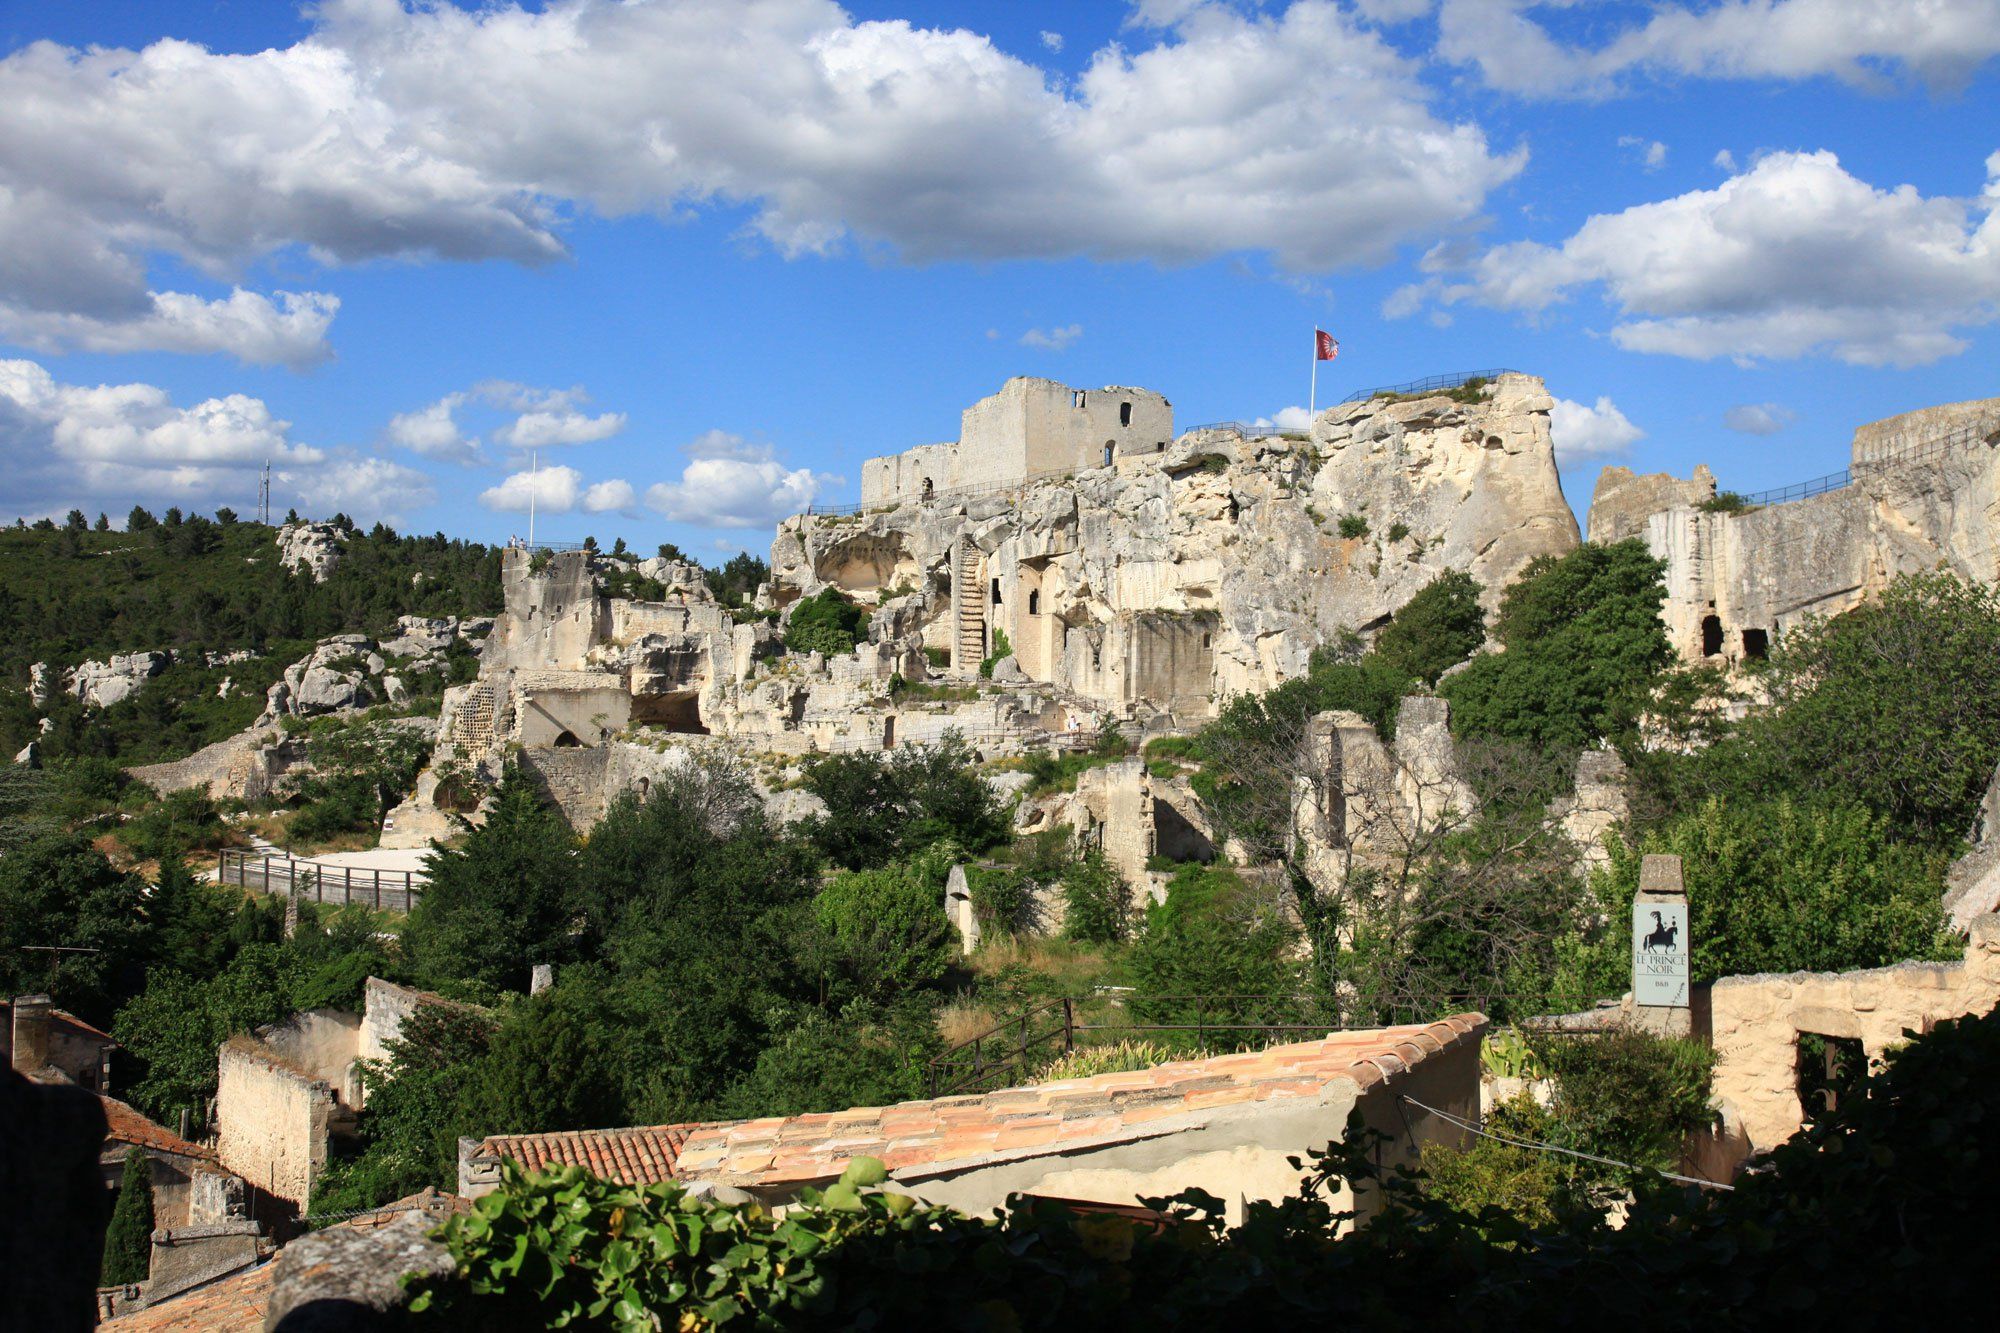 Les Baux De Provence Plus Beaux Villages De Provence